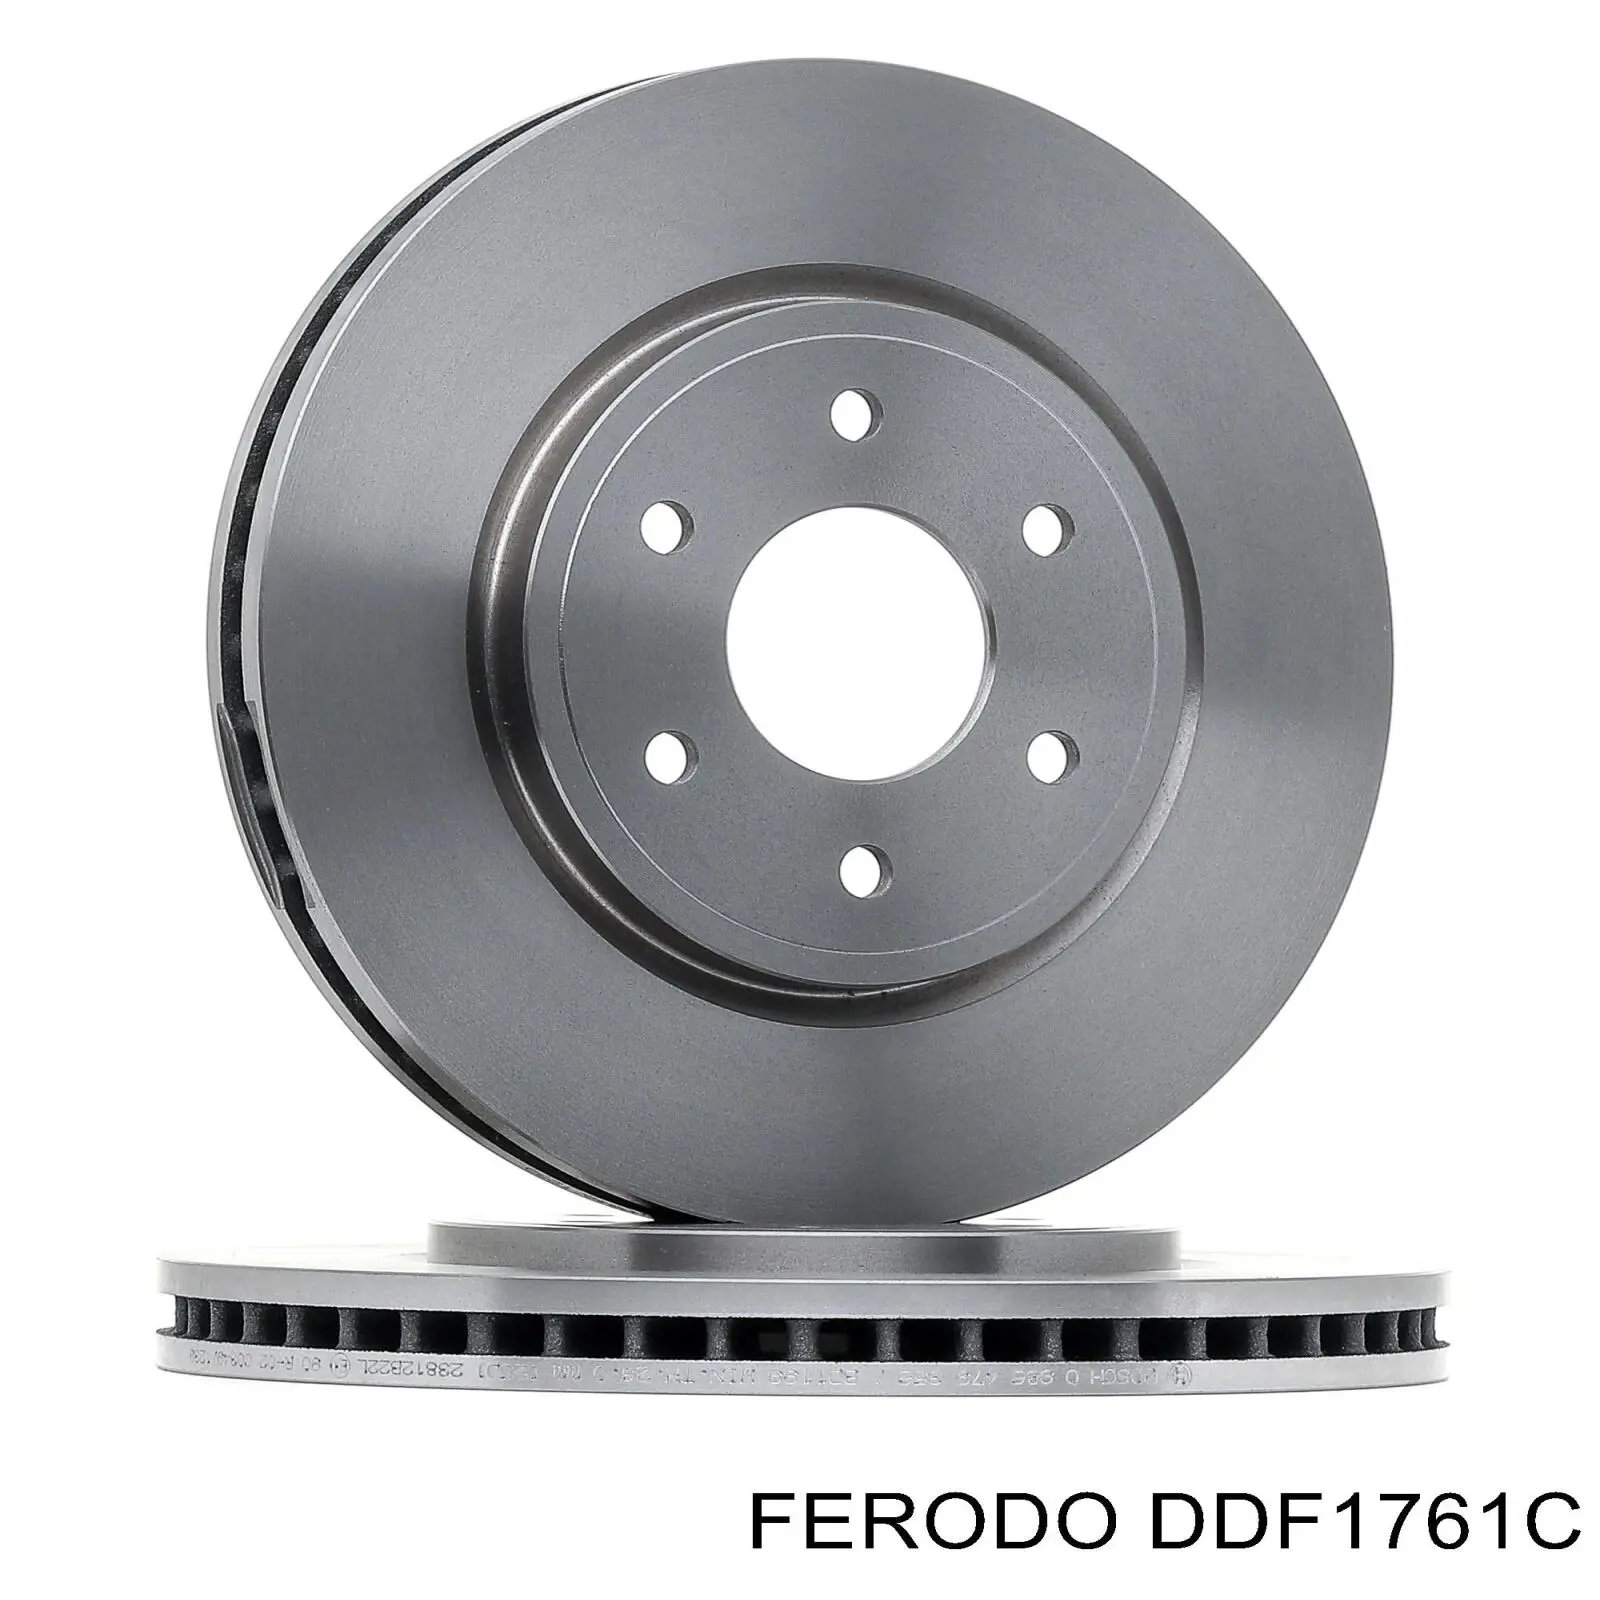 DDF1761C Ferodo disco de freno delantero